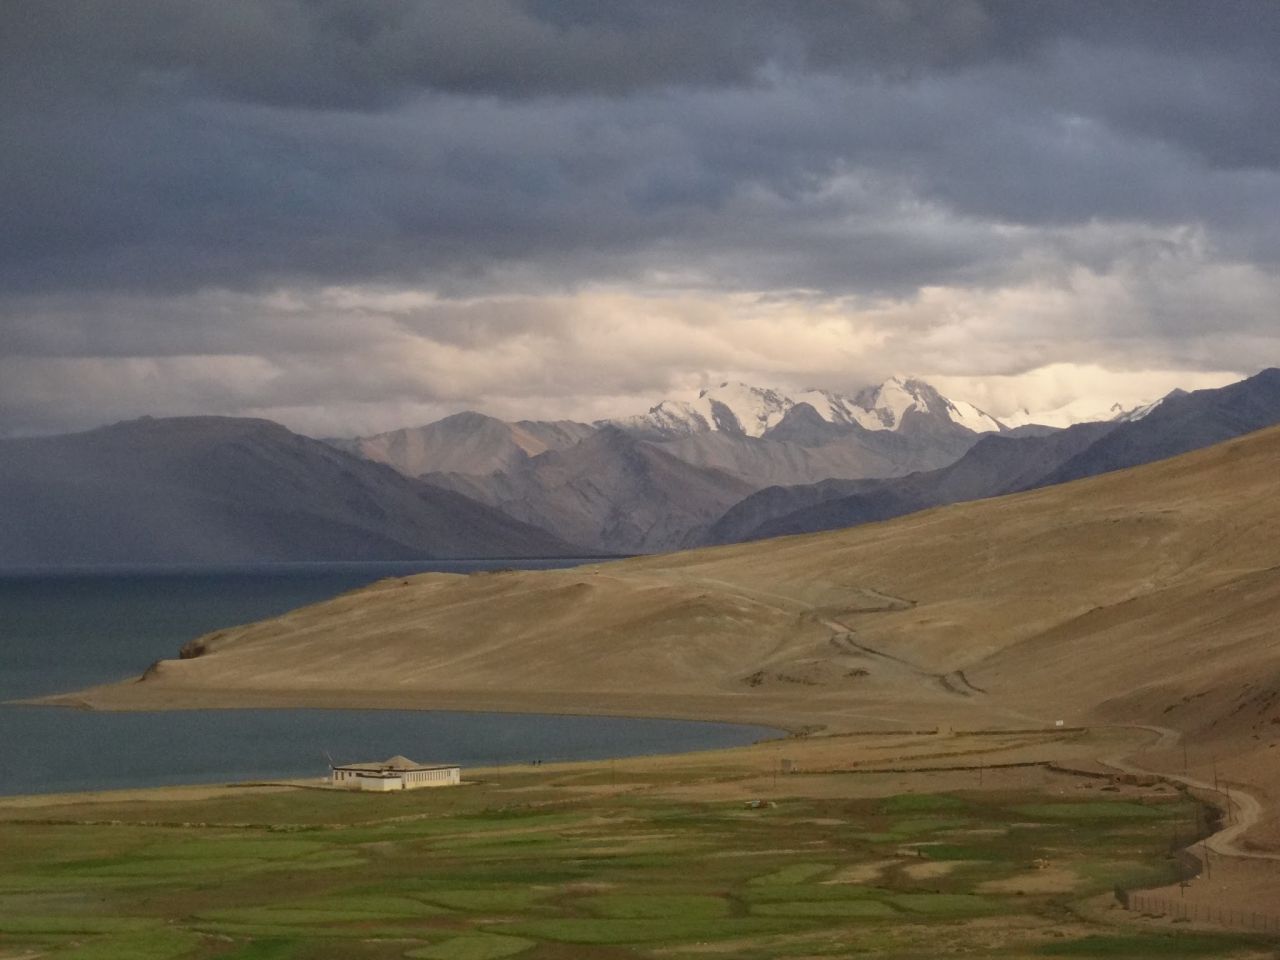 Zanskar peaks towering over the Tso Moriri lake